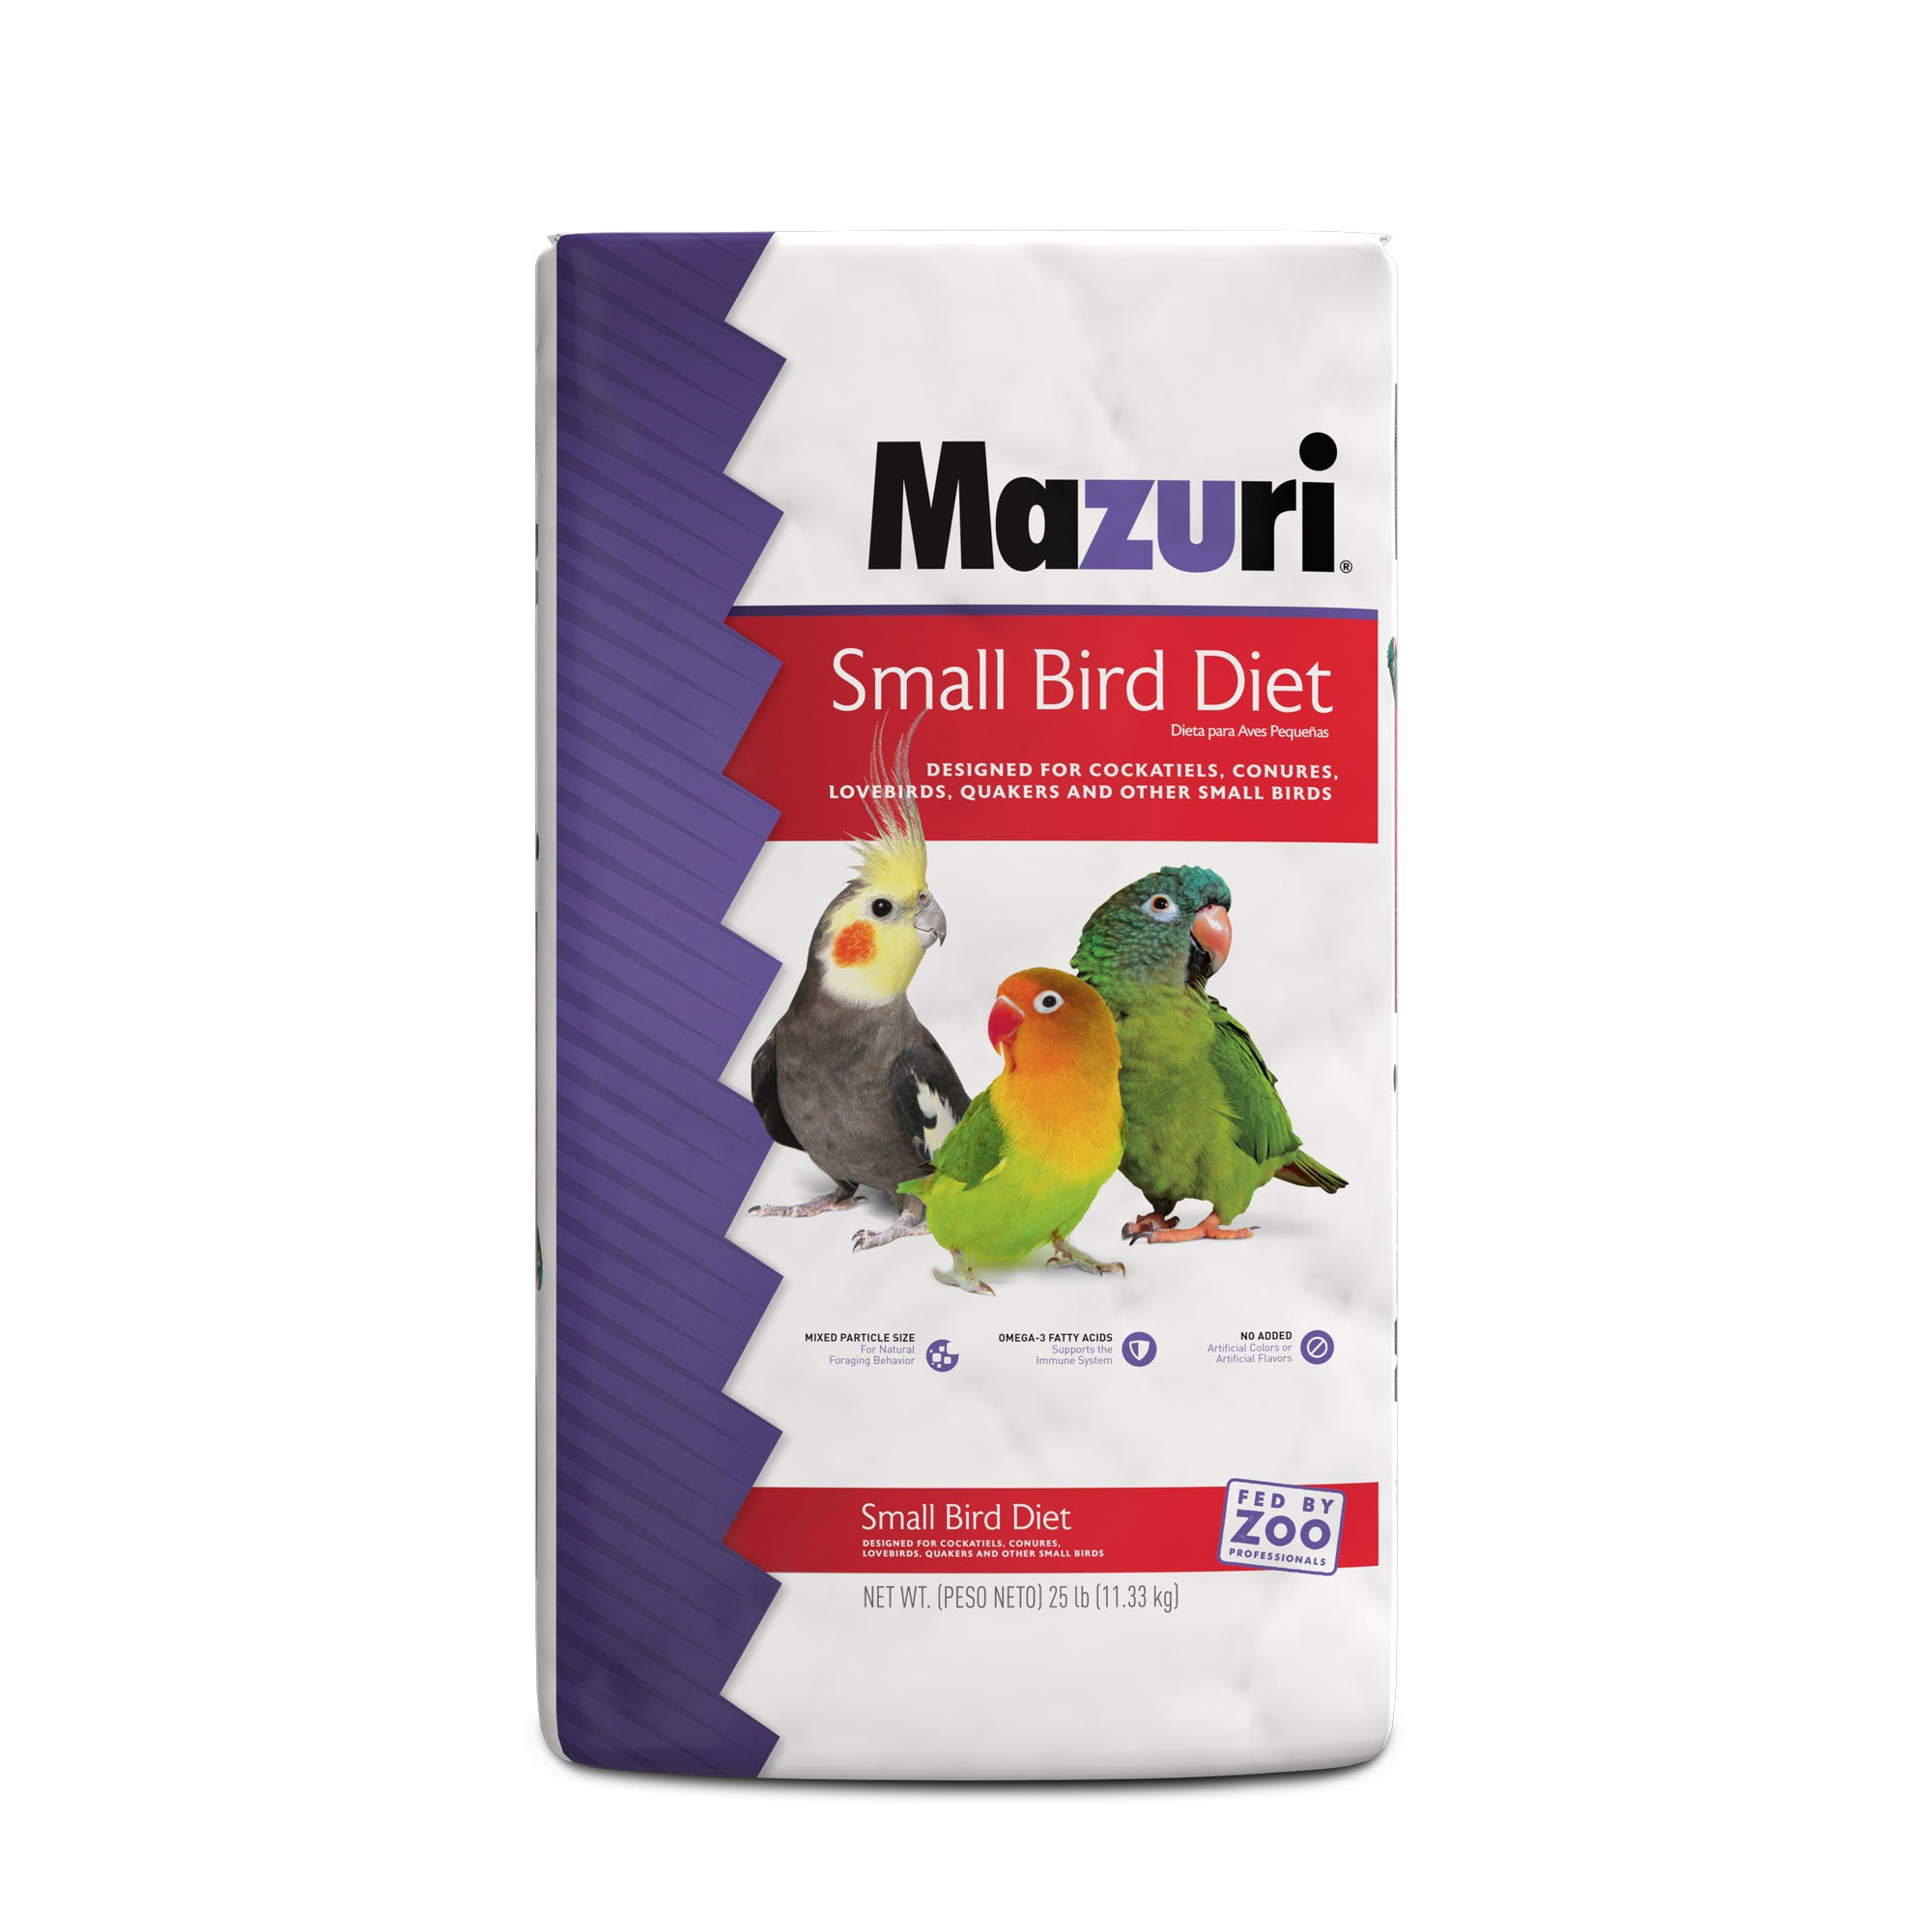 Small Bird Diet 25 lb bag